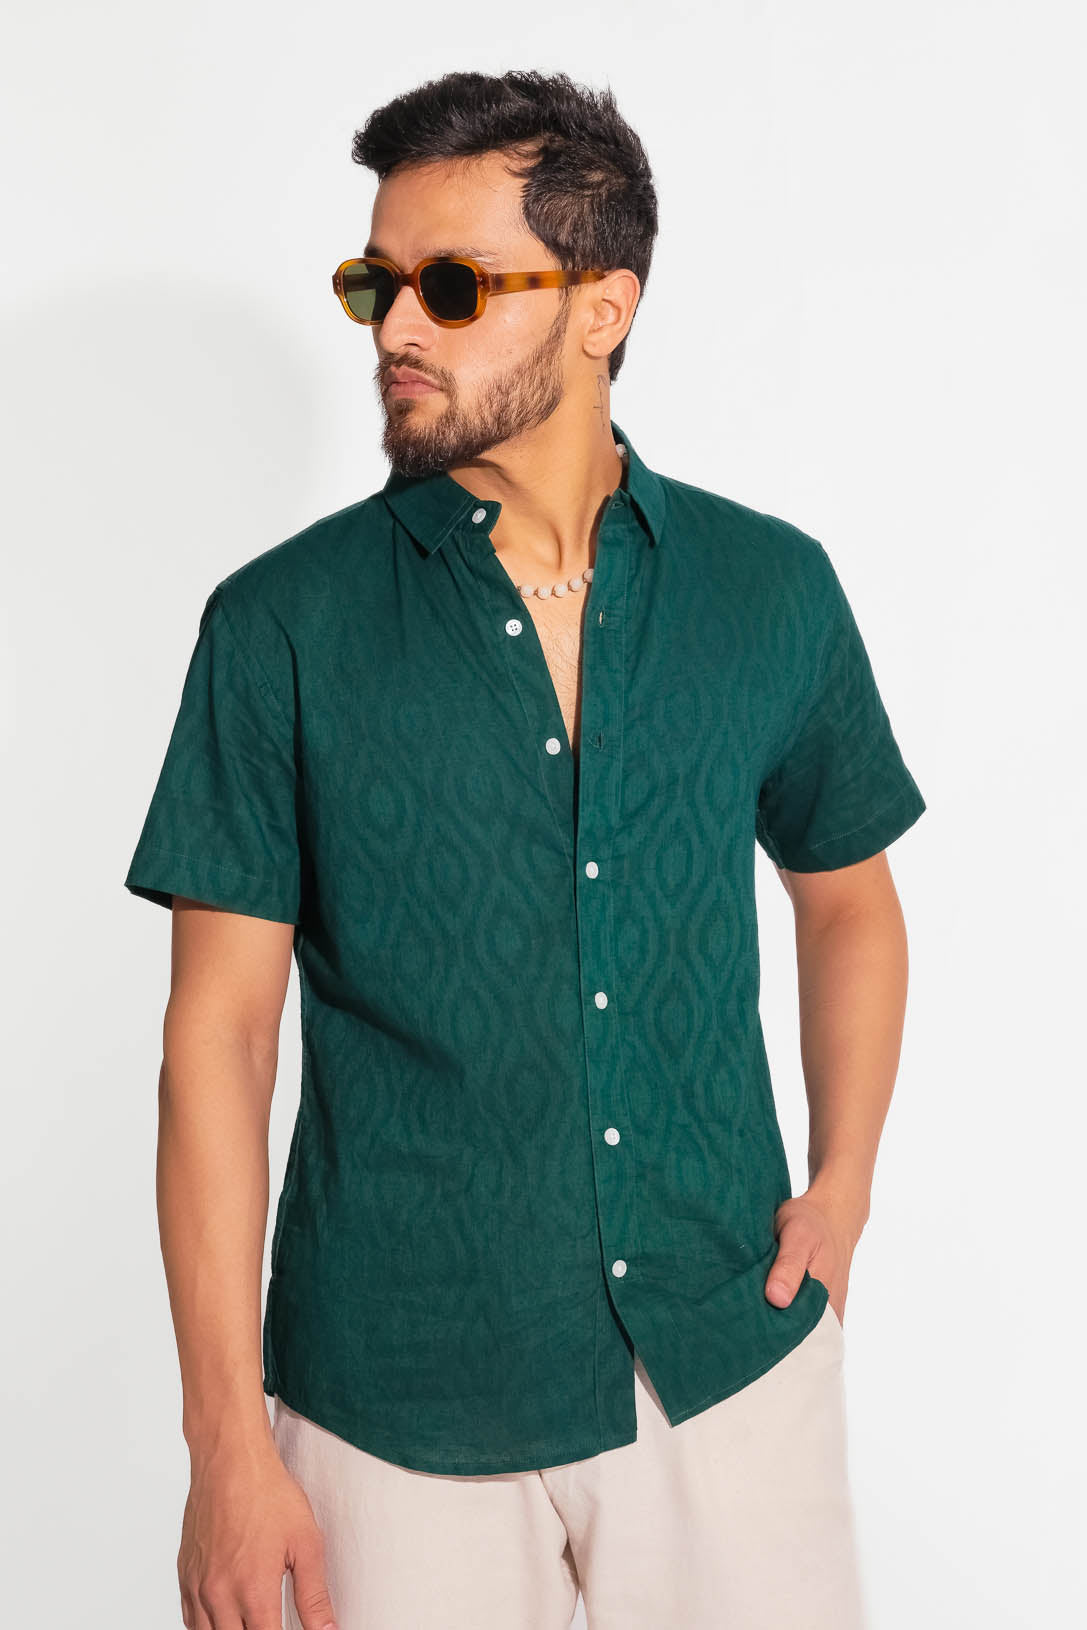 Absolute Green Shirt